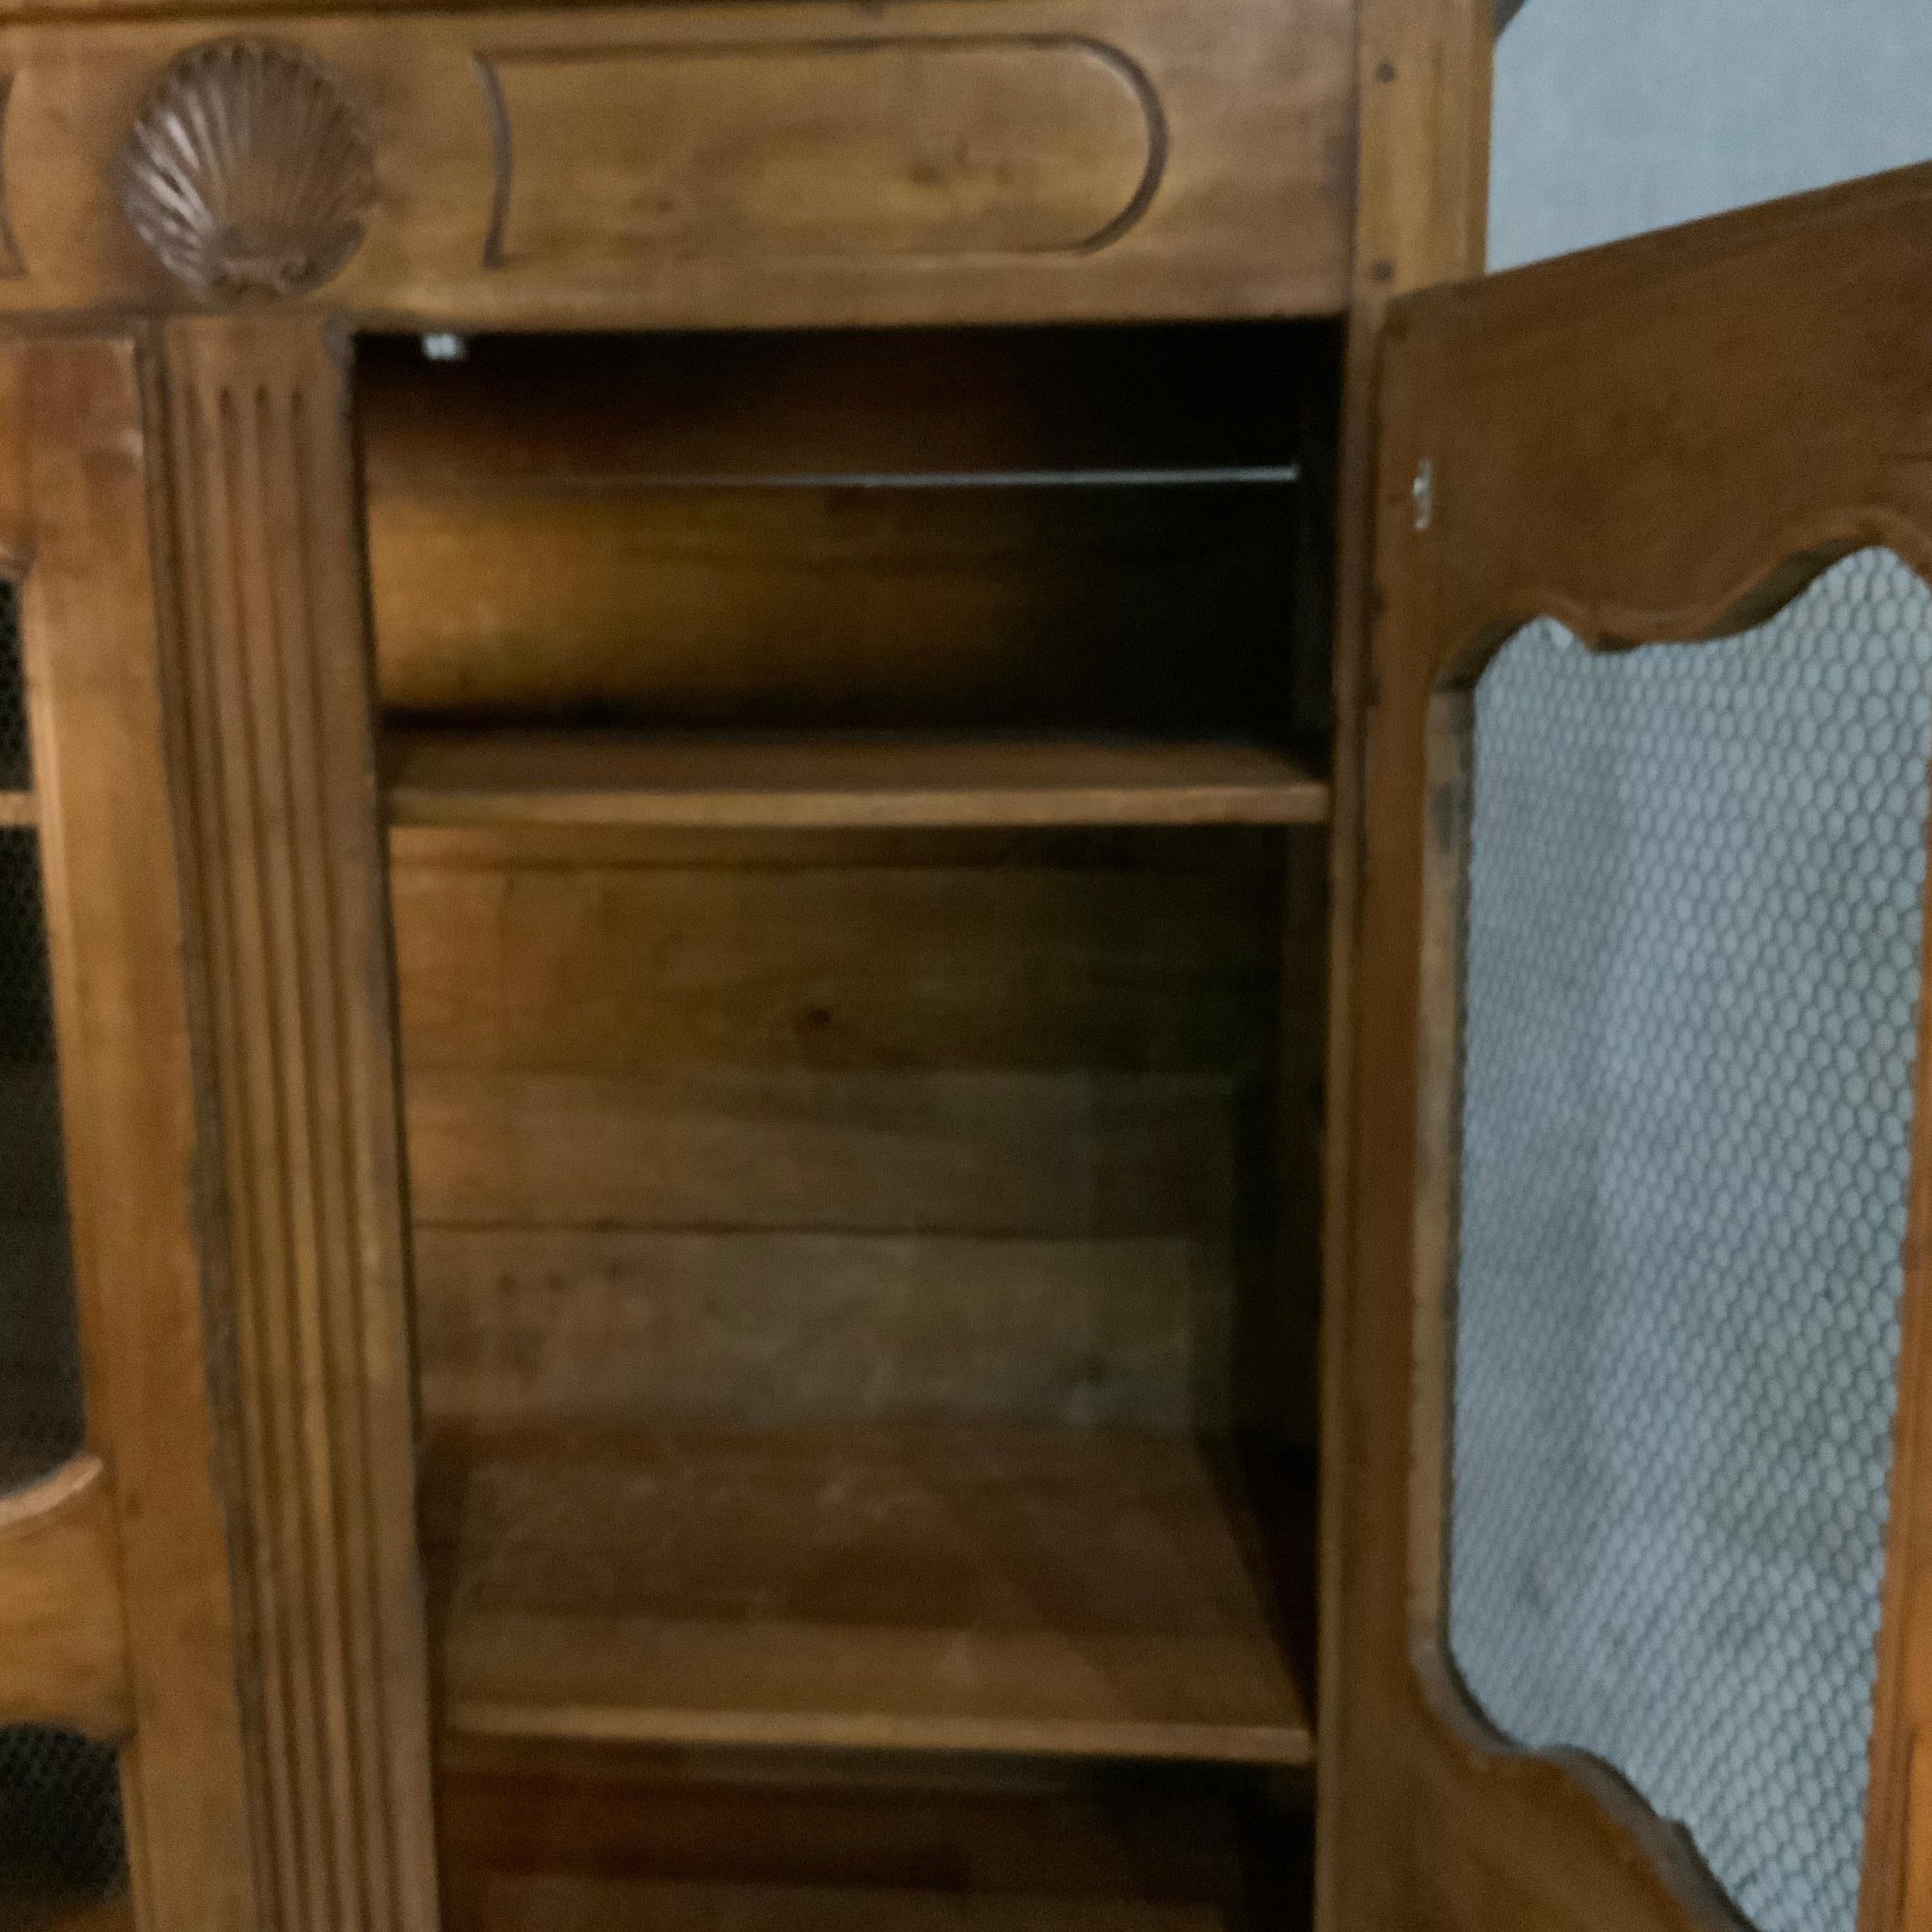 Zweitüriger Schrank mit dekorativ geschnitztem Muschelmotiv. Die Türen sind mit Hühnerdraht versehen und lassen sich öffnen, um einen Innenraum mit Regalen freizugeben. Erworben aus einer Privatsammlung. Dies ist ein vollständiges Stück ohne